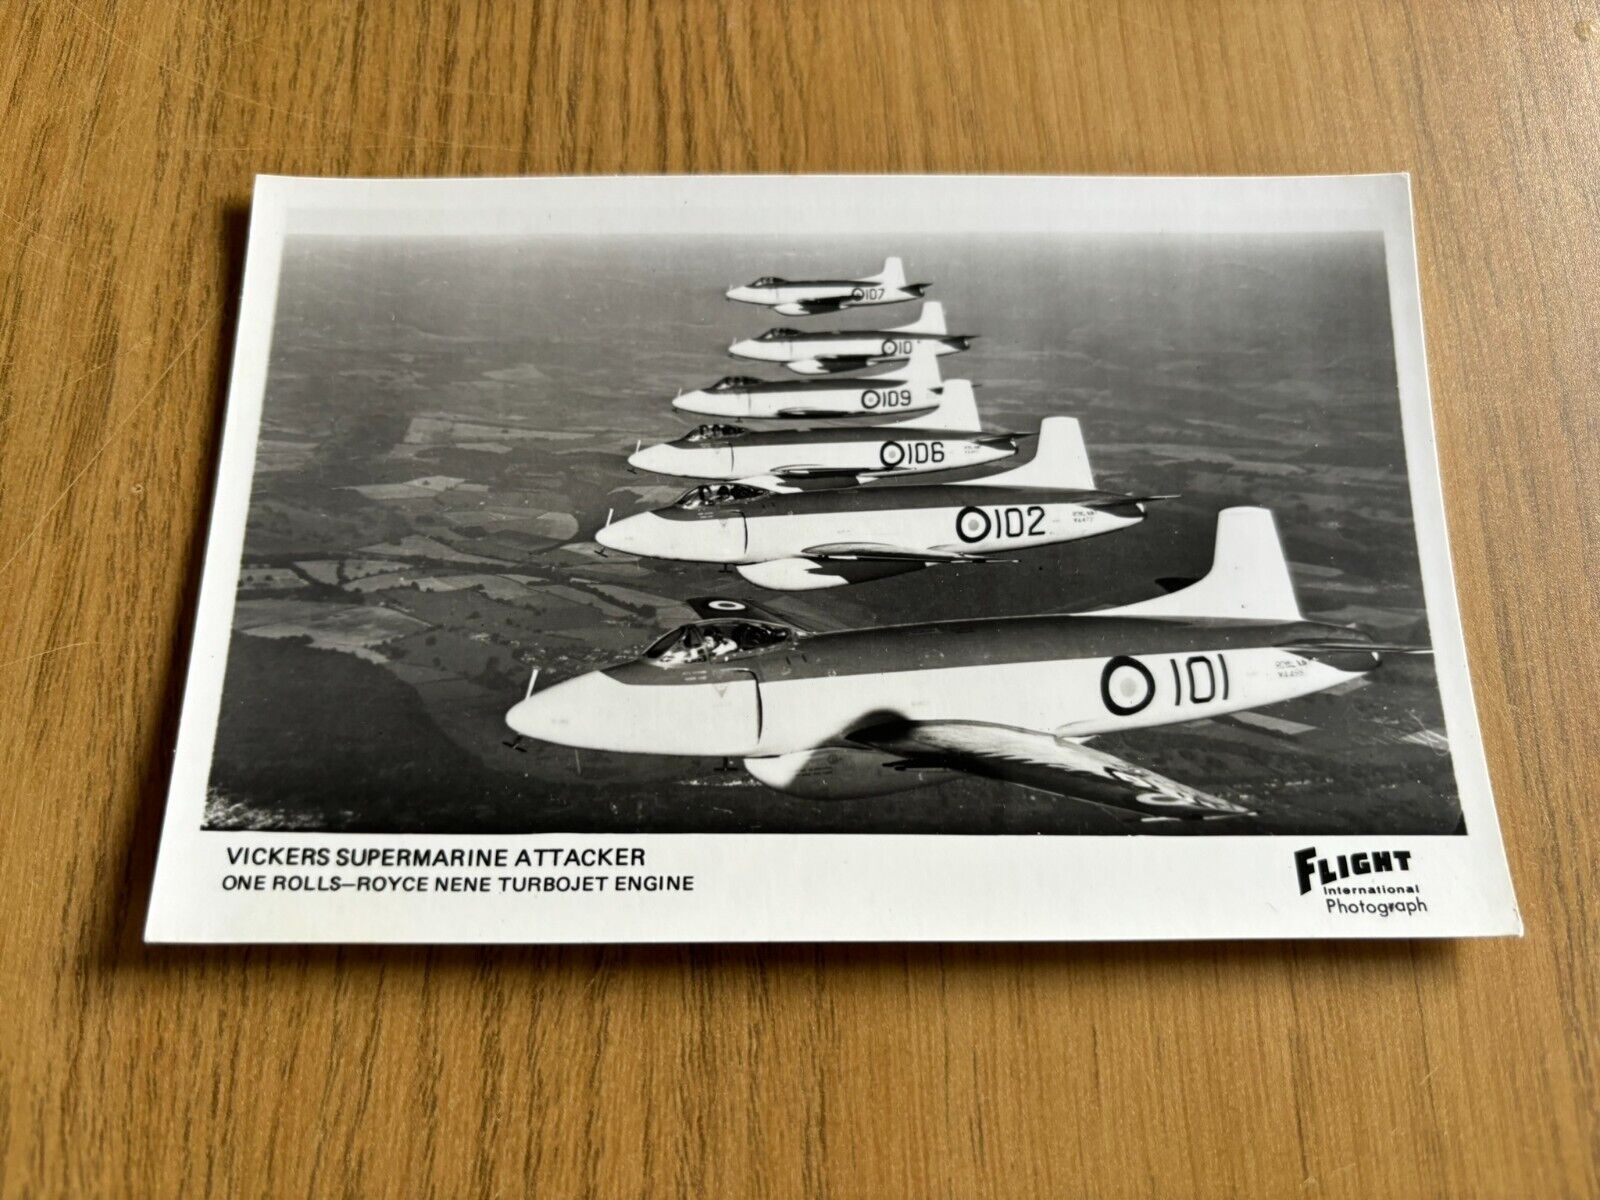 Royal Navy Vickers Supermarine Attacker postcard